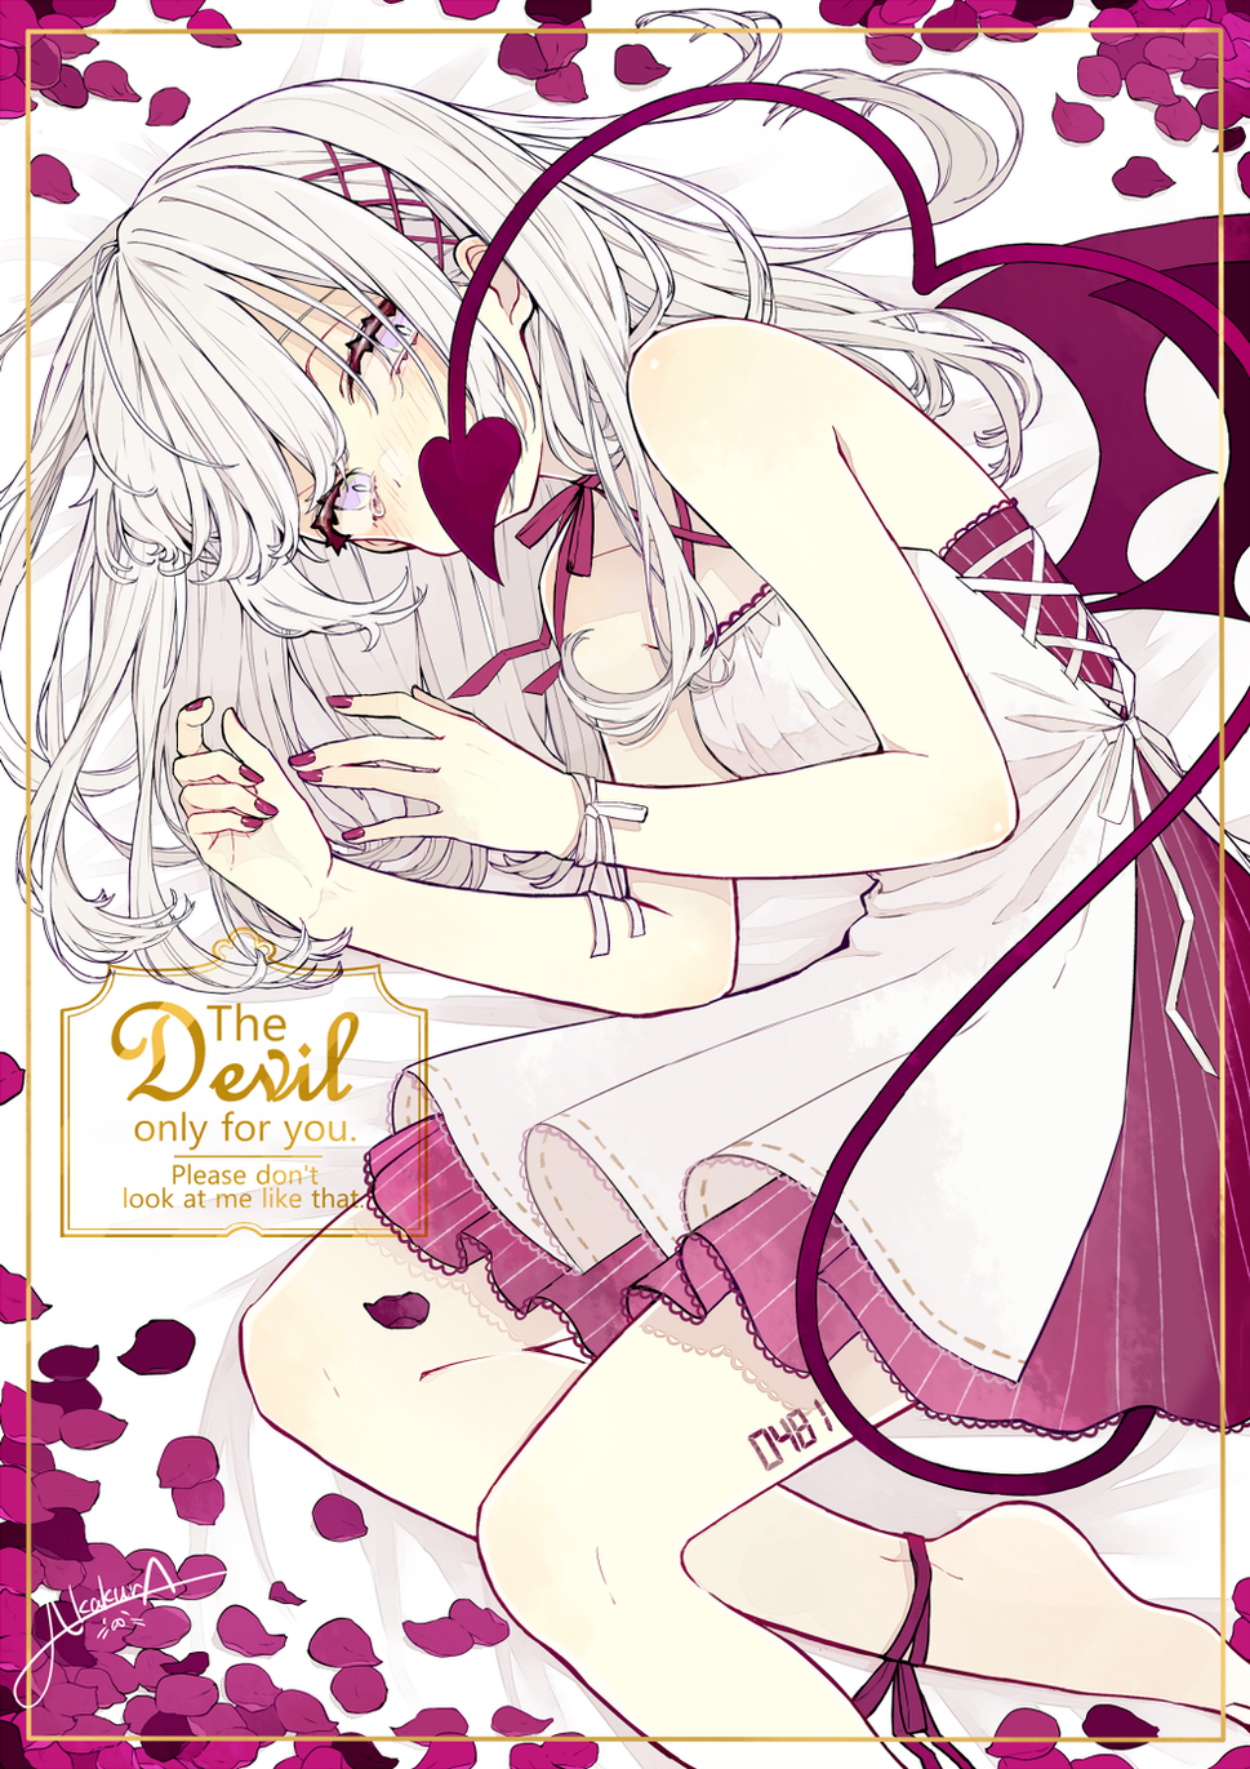 Anime 1250x1769 Akakura anime girls Pixiv succubus demon tail demon girls white hair petals digital art devil girl